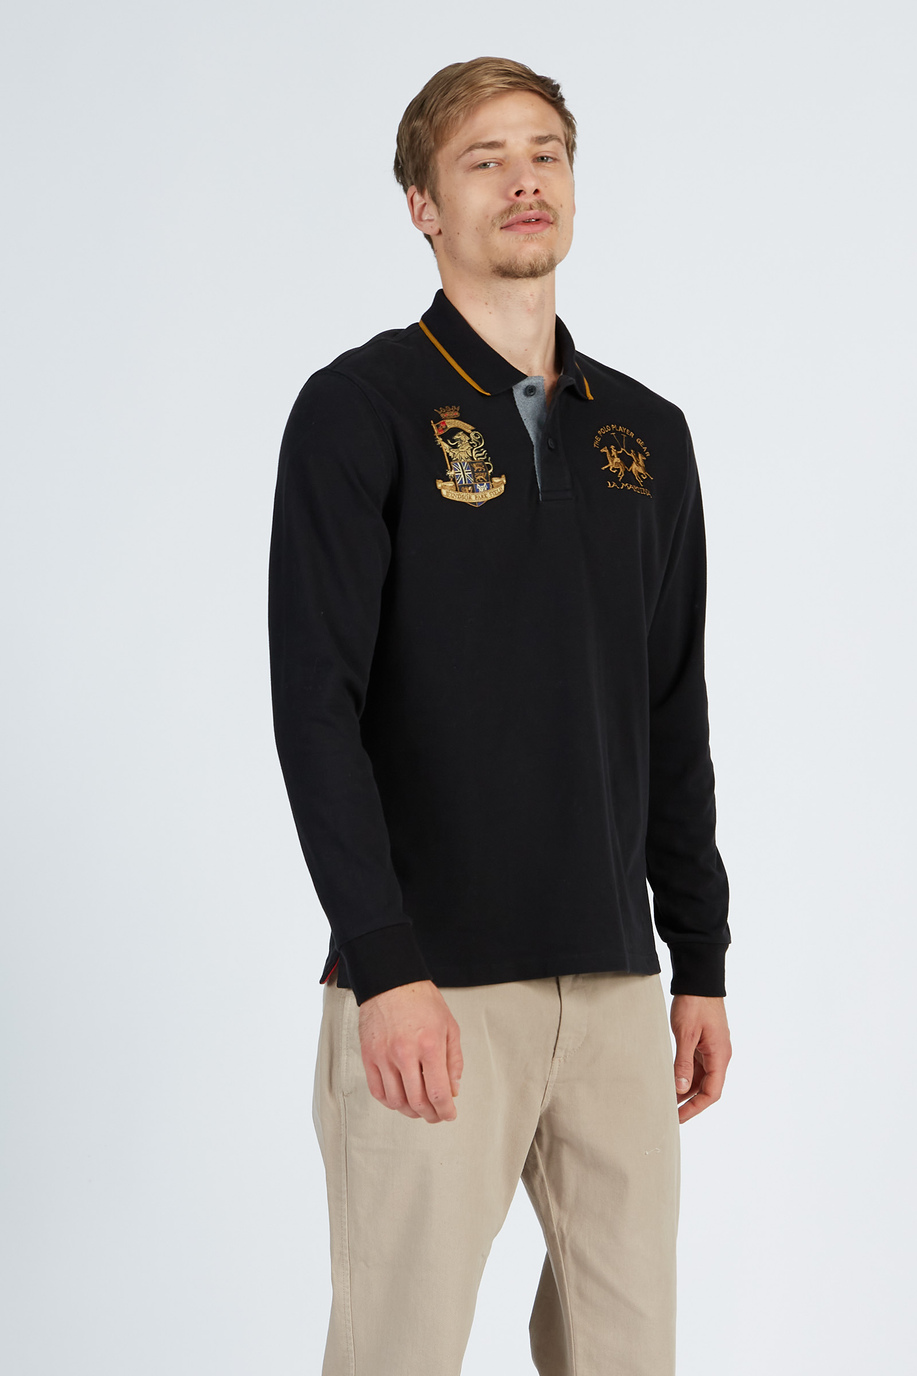 Herren-Poloshirt mit langen Ärmeln aus Jersey-Baumwolle - Herren | La Martina - Official Online Shop